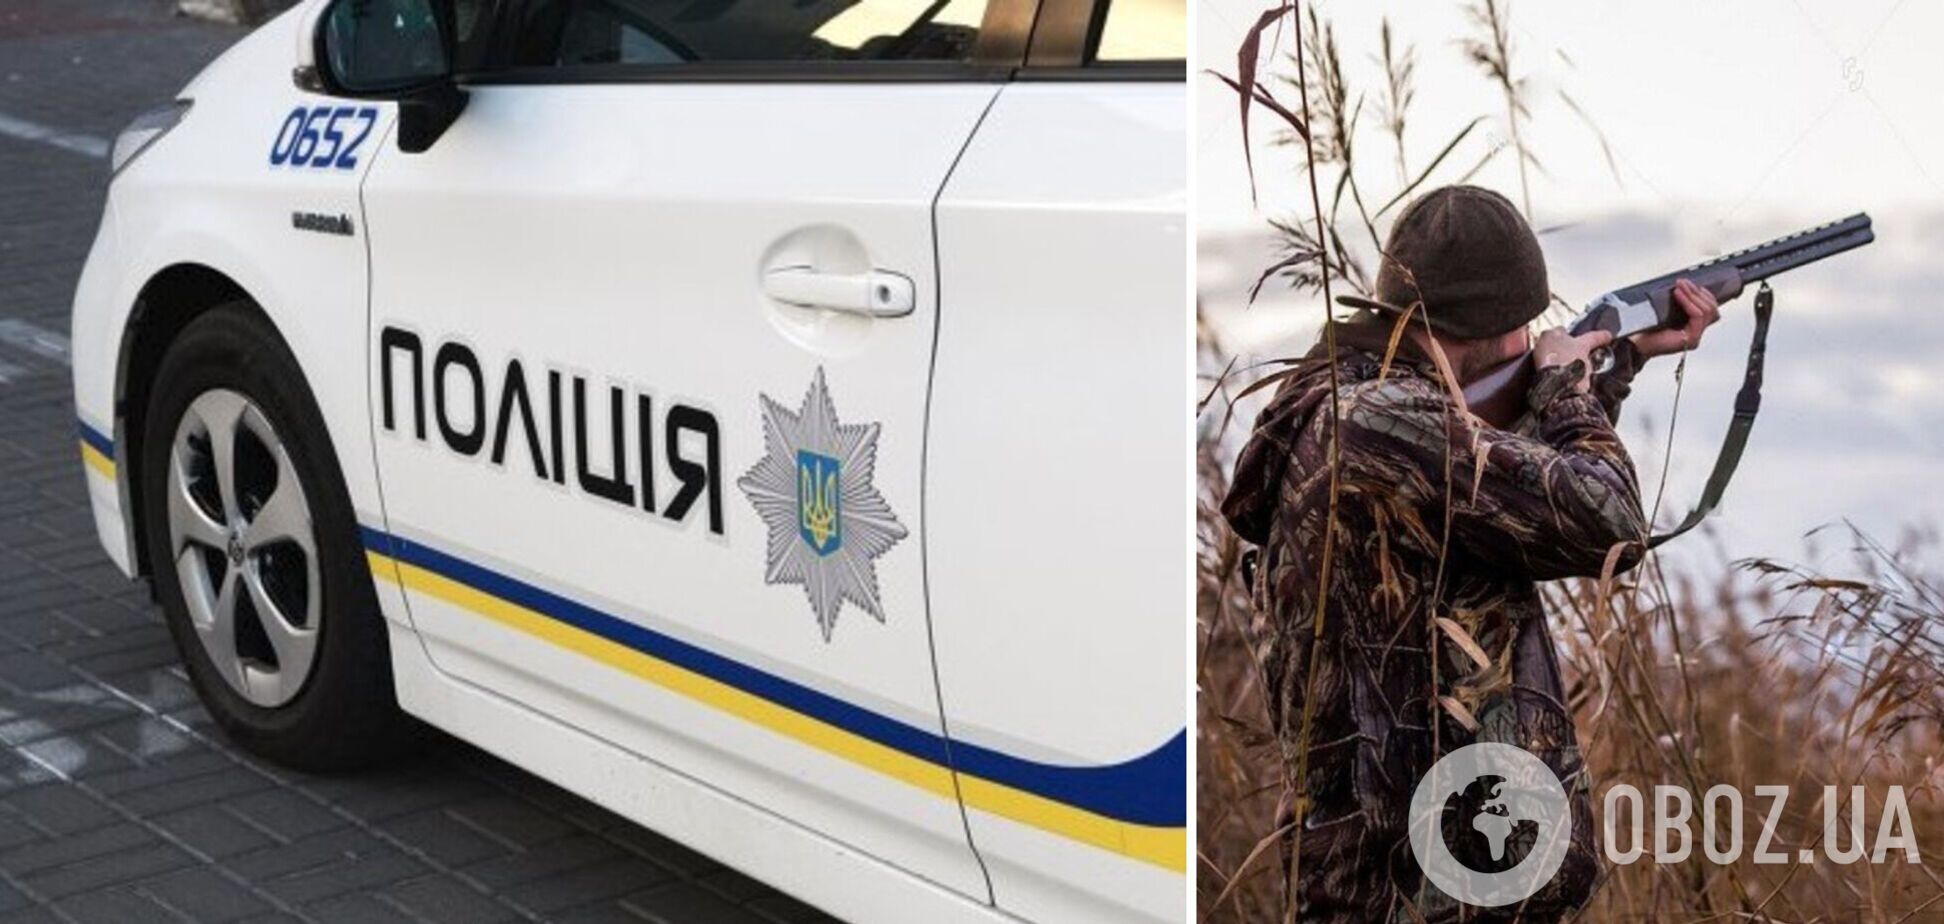 Дробь попала в голову: выяснились новые детали гибели полицейского на охоте в Черниговской области